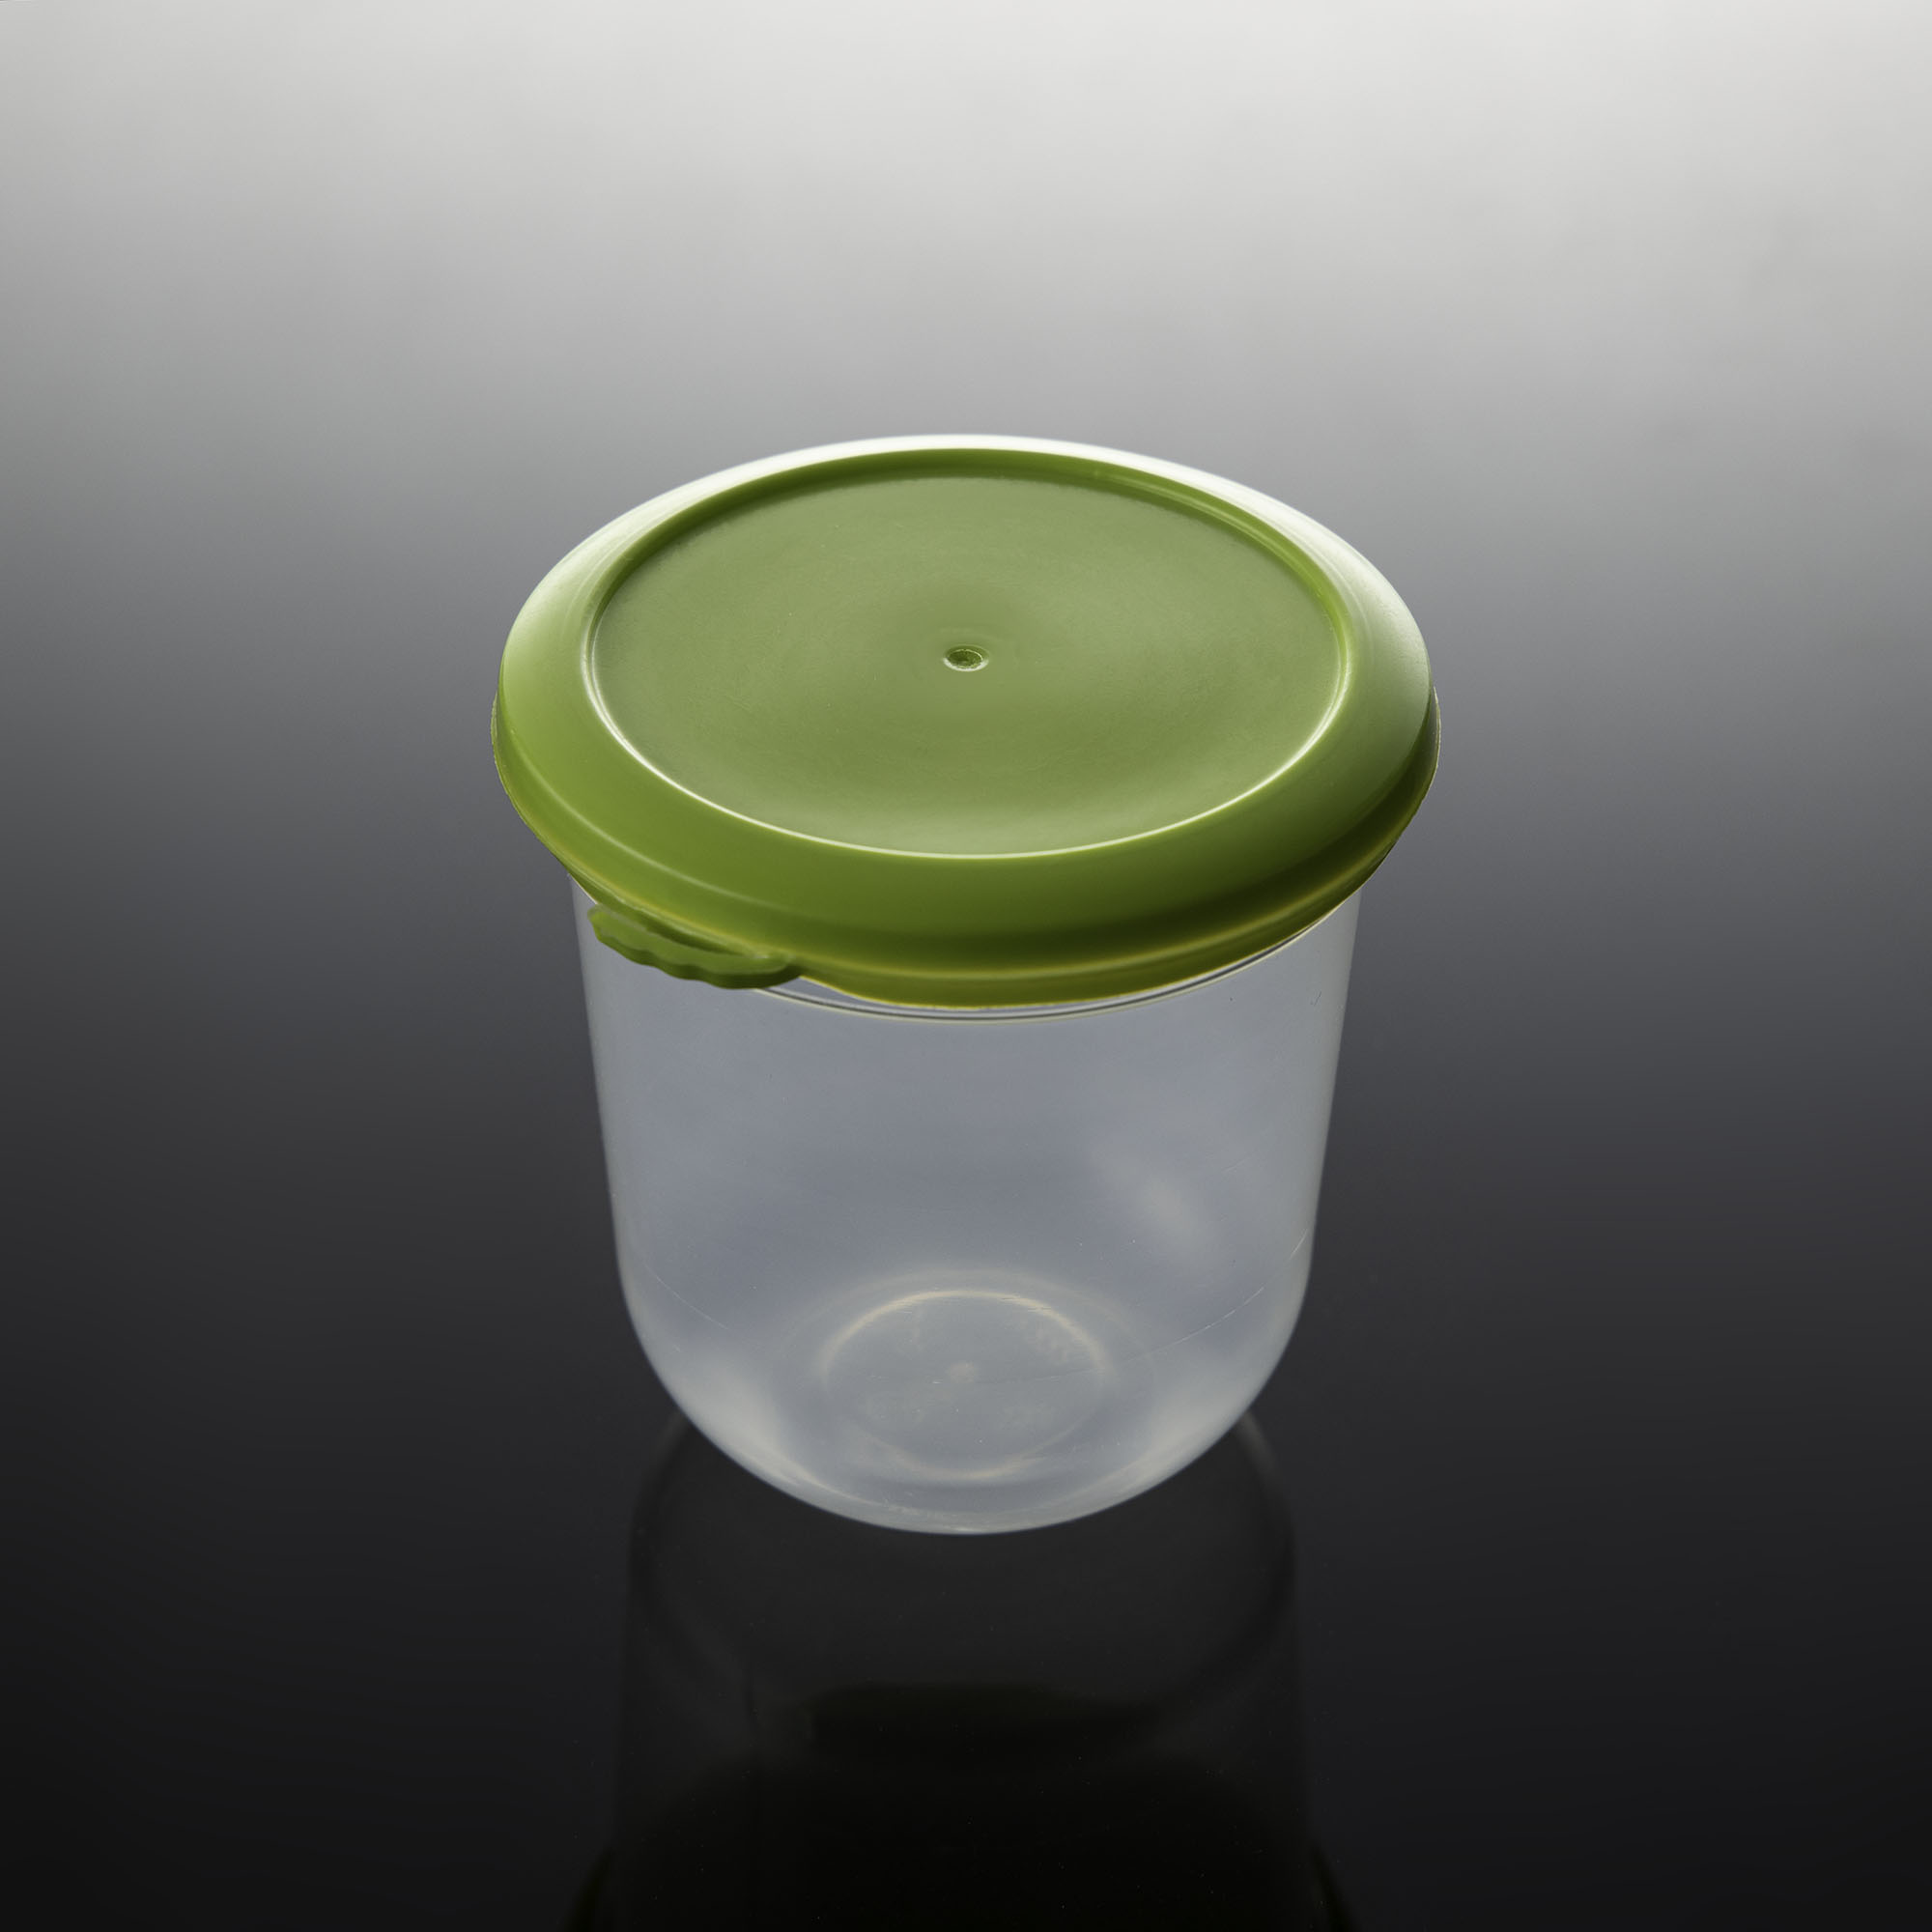 ถ้วยพลาสติก ทรงแคปซูล พร้อมฝาสีเขียวอ่อน ขนาด 6 oz. (20ชุด/แพ็ค)